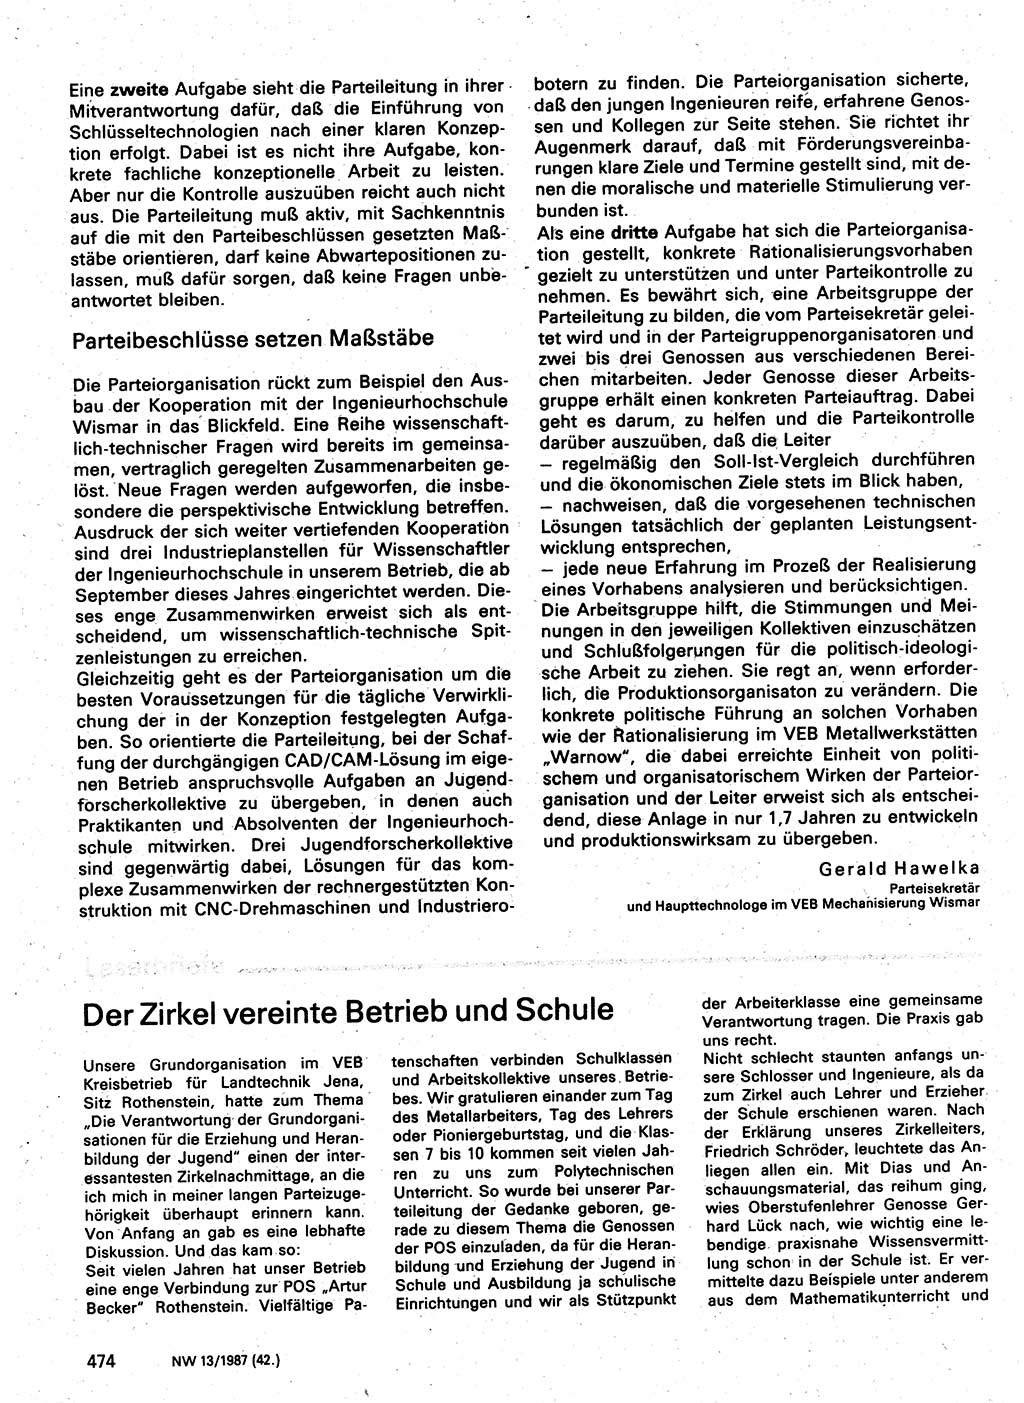 Neuer Weg (NW), Organ des Zentralkomitees (ZK) der SED (Sozialistische Einheitspartei Deutschlands) für Fragen des Parteilebens, 42. Jahrgang [Deutsche Demokratische Republik (DDR)] 1987, Seite 474 (NW ZK SED DDR 1987, S. 474)